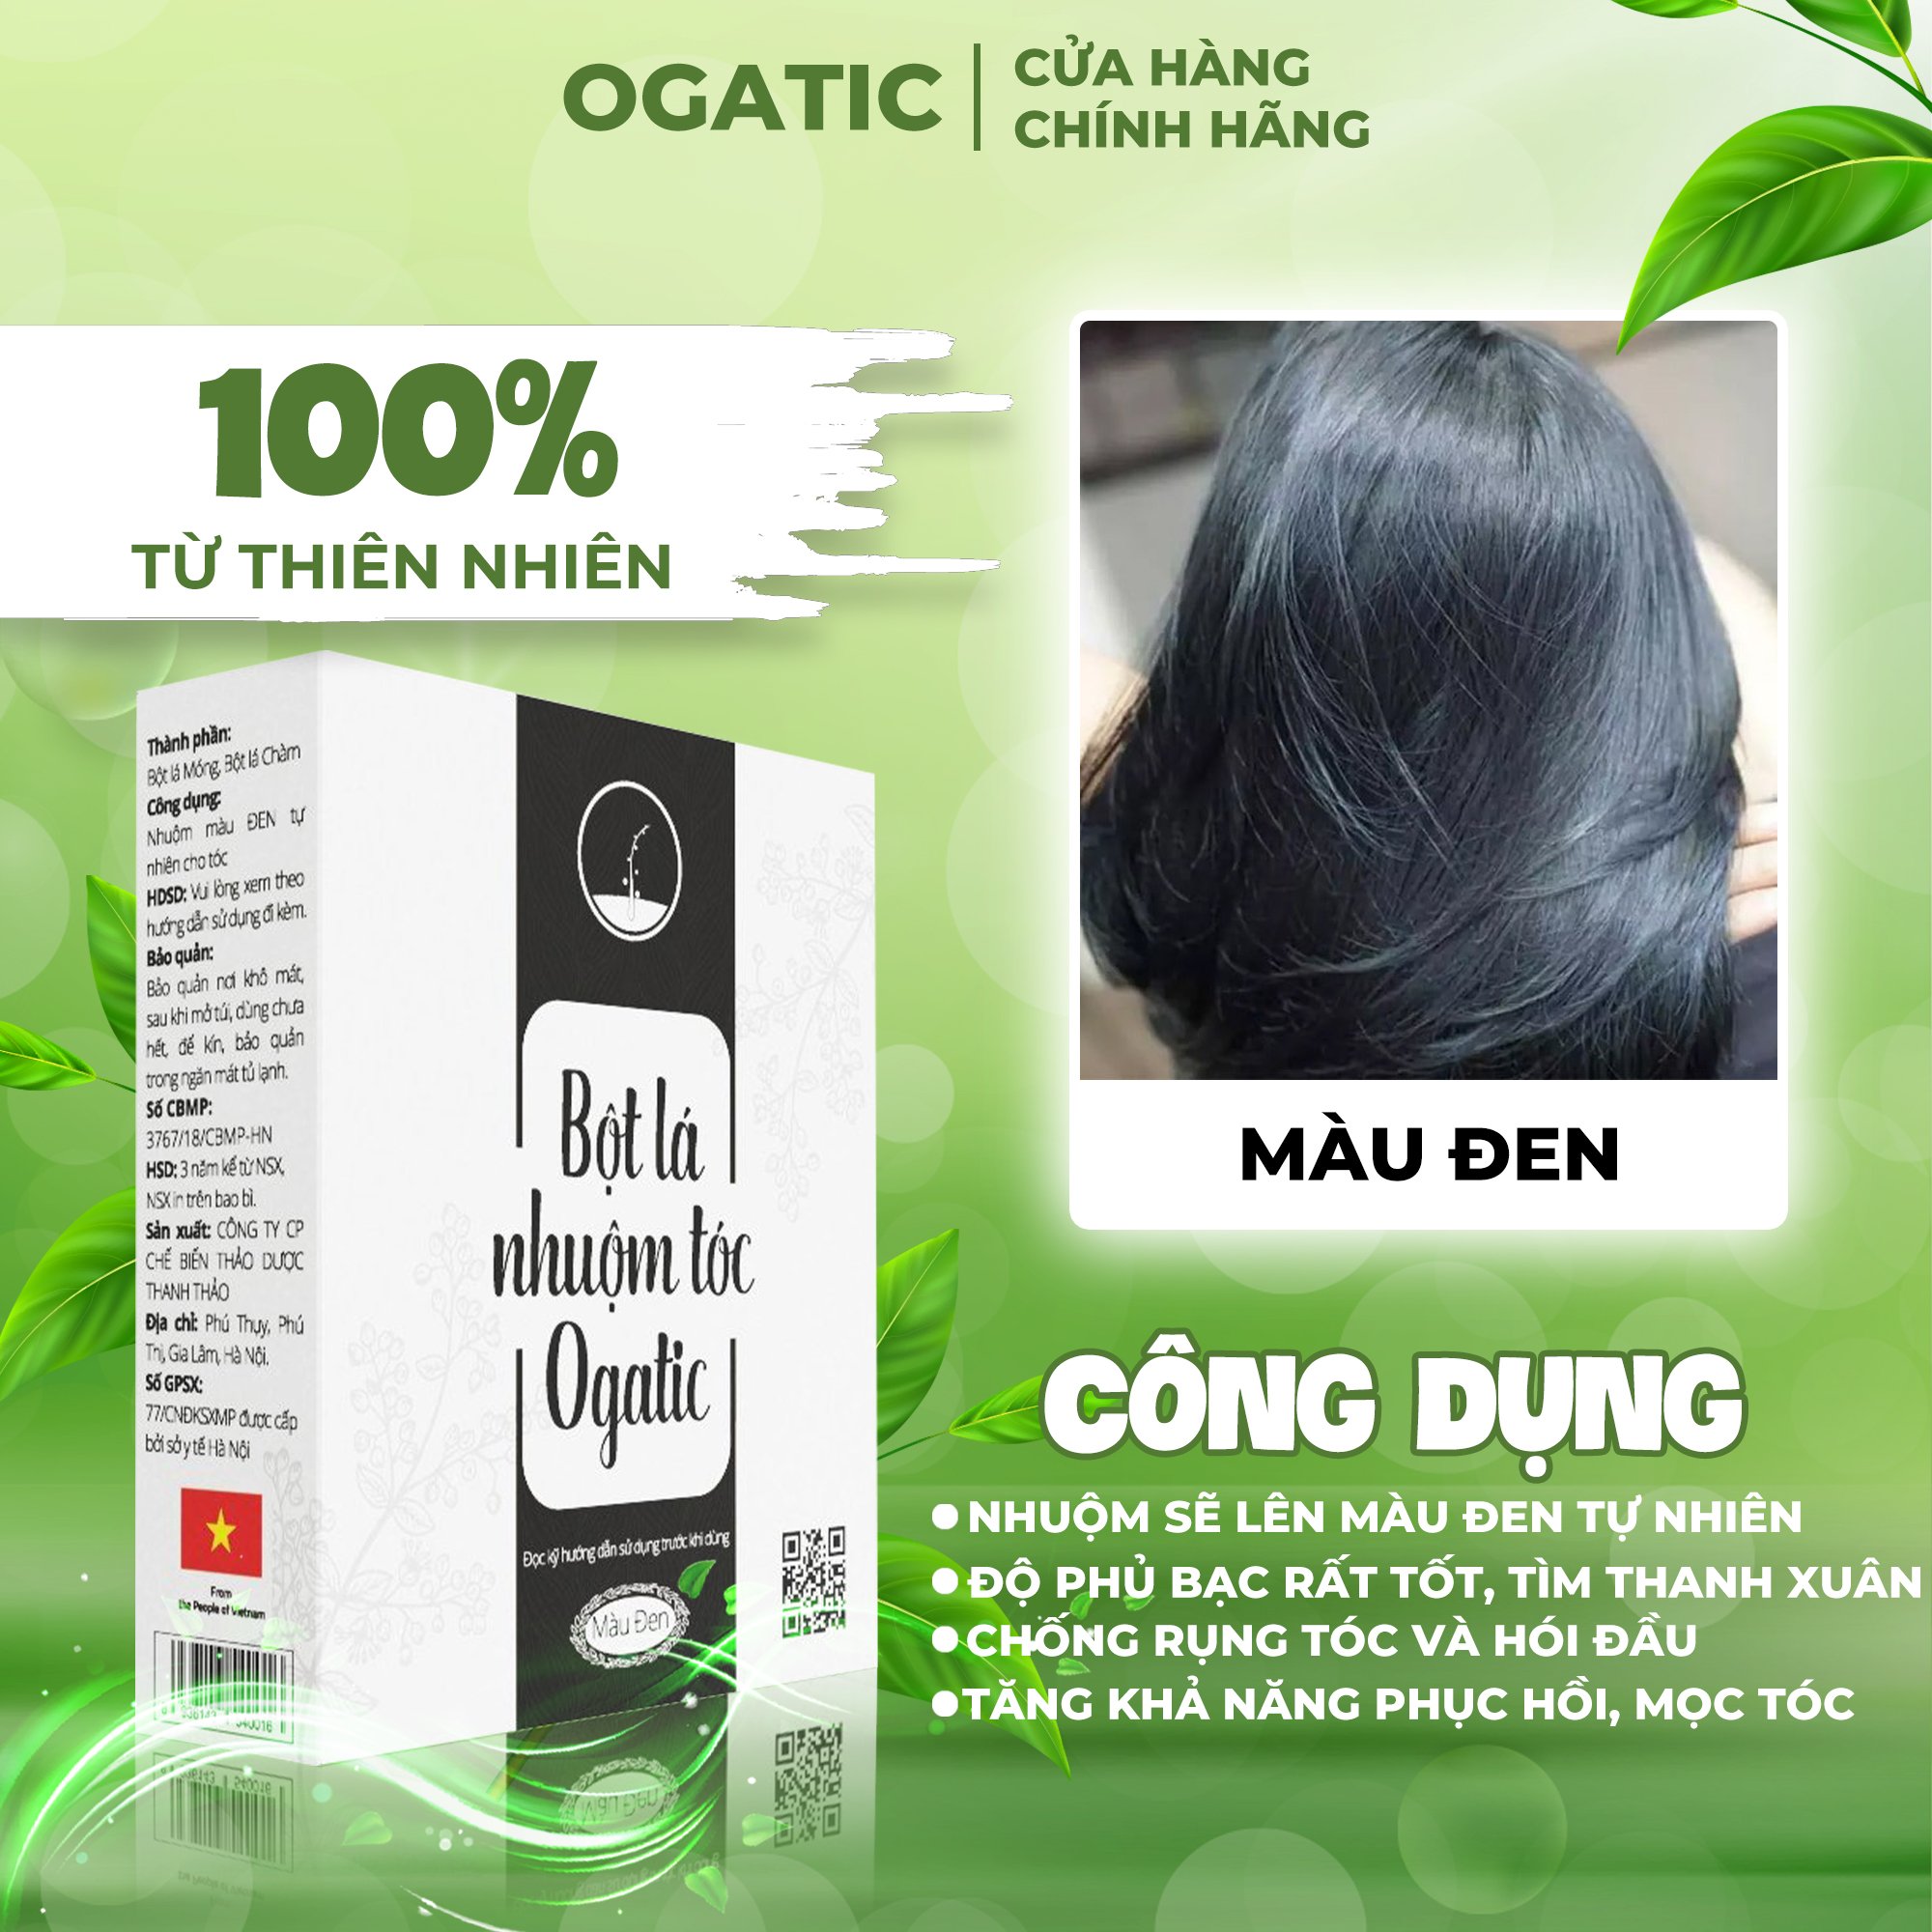 OGATIC là thương hiệu bột lá nhuộm tóc được nhiều chuyên gia tin dùng. Với nhiều lựa chọn màu sắc đa dạng, sản phẩm này giúp bạn tô điểm cho mái tóc của mình với sắc màu tươi mới và bền đẹp.